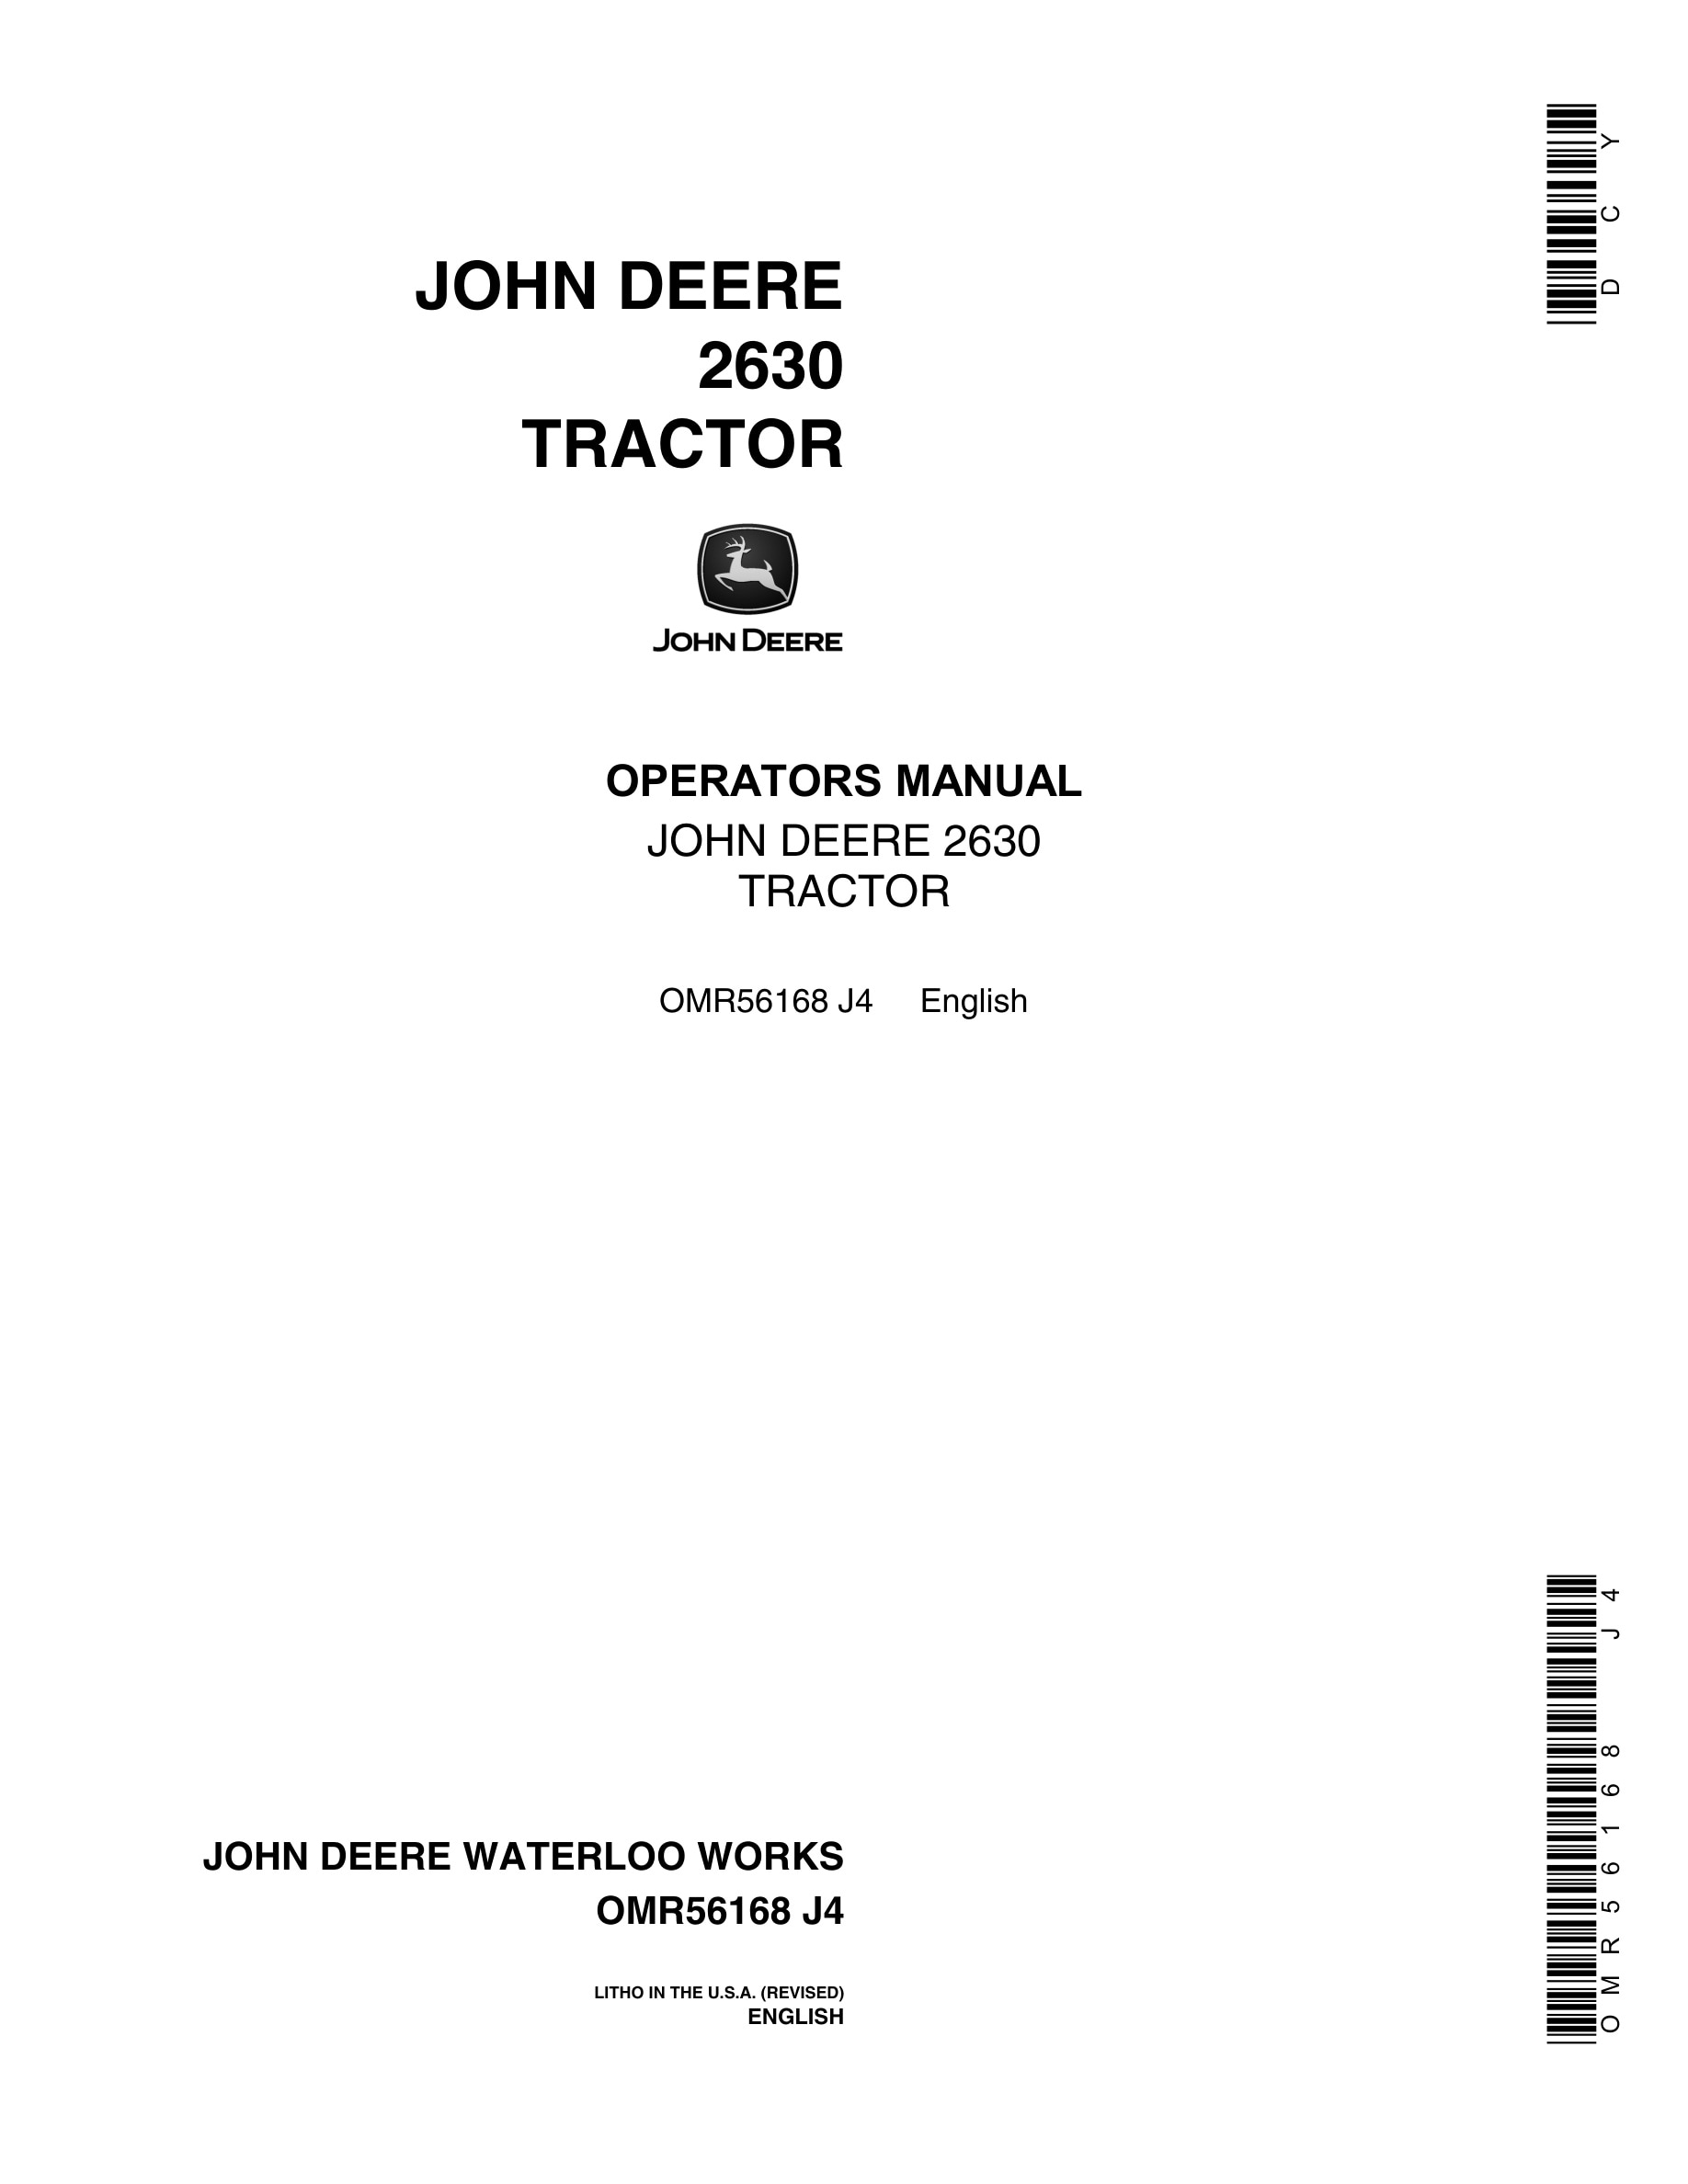 John Deere 2630 Tractor Operator Manual OMR56168-1